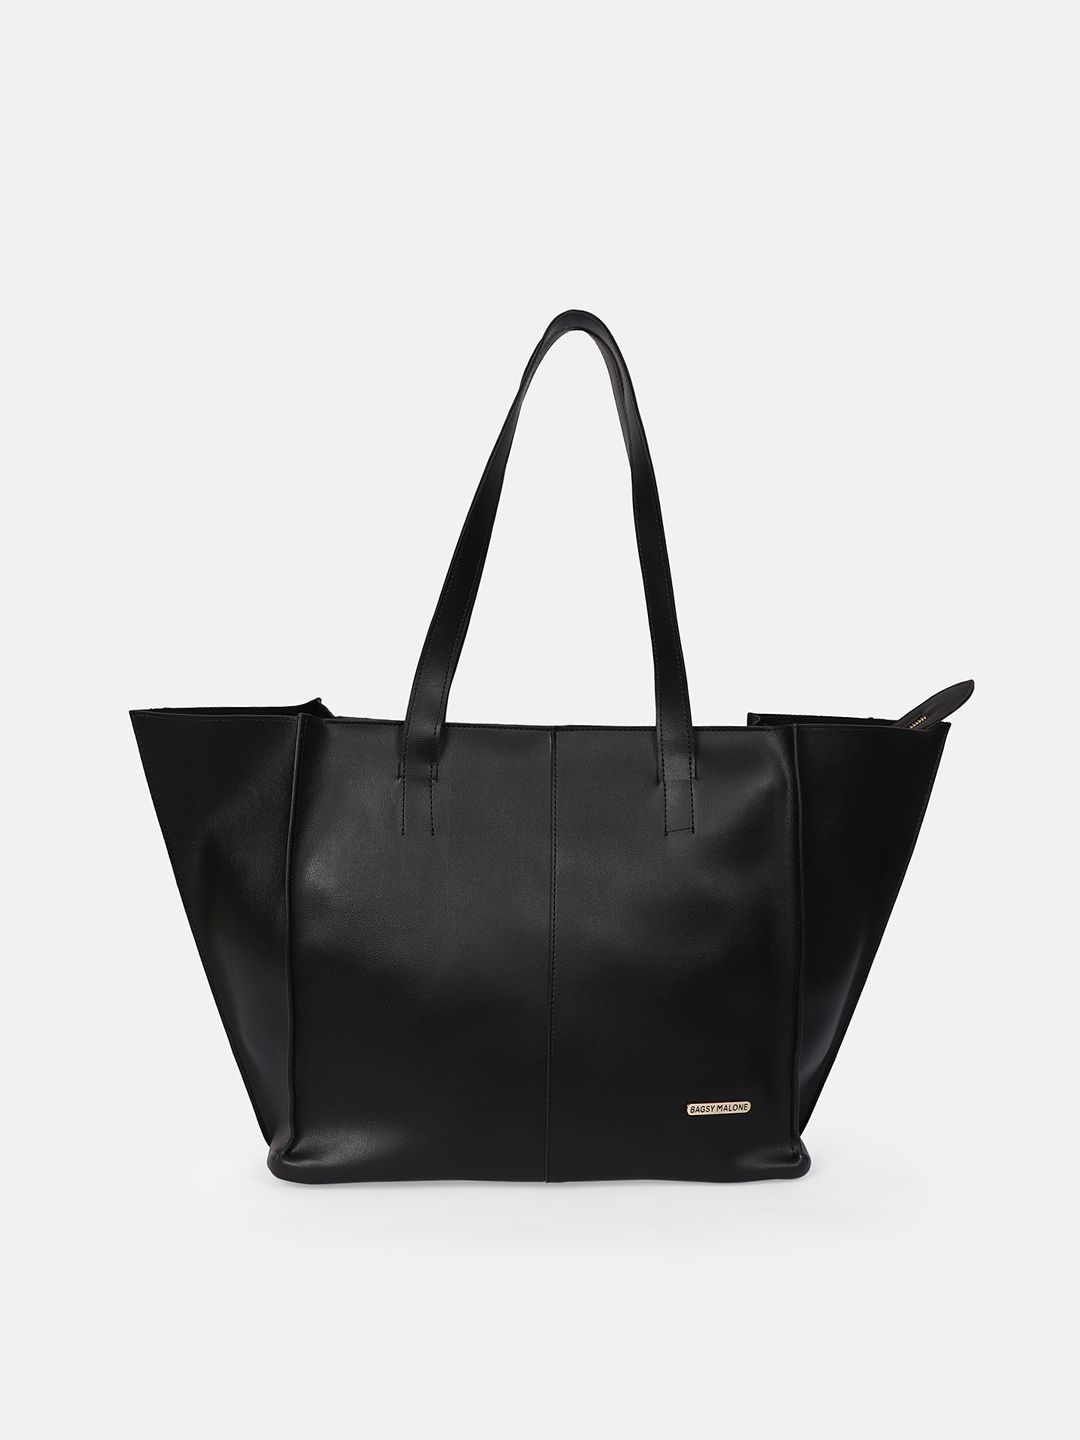 Bagsy Malone Black PU Shopper Shoulder Bag Price in India